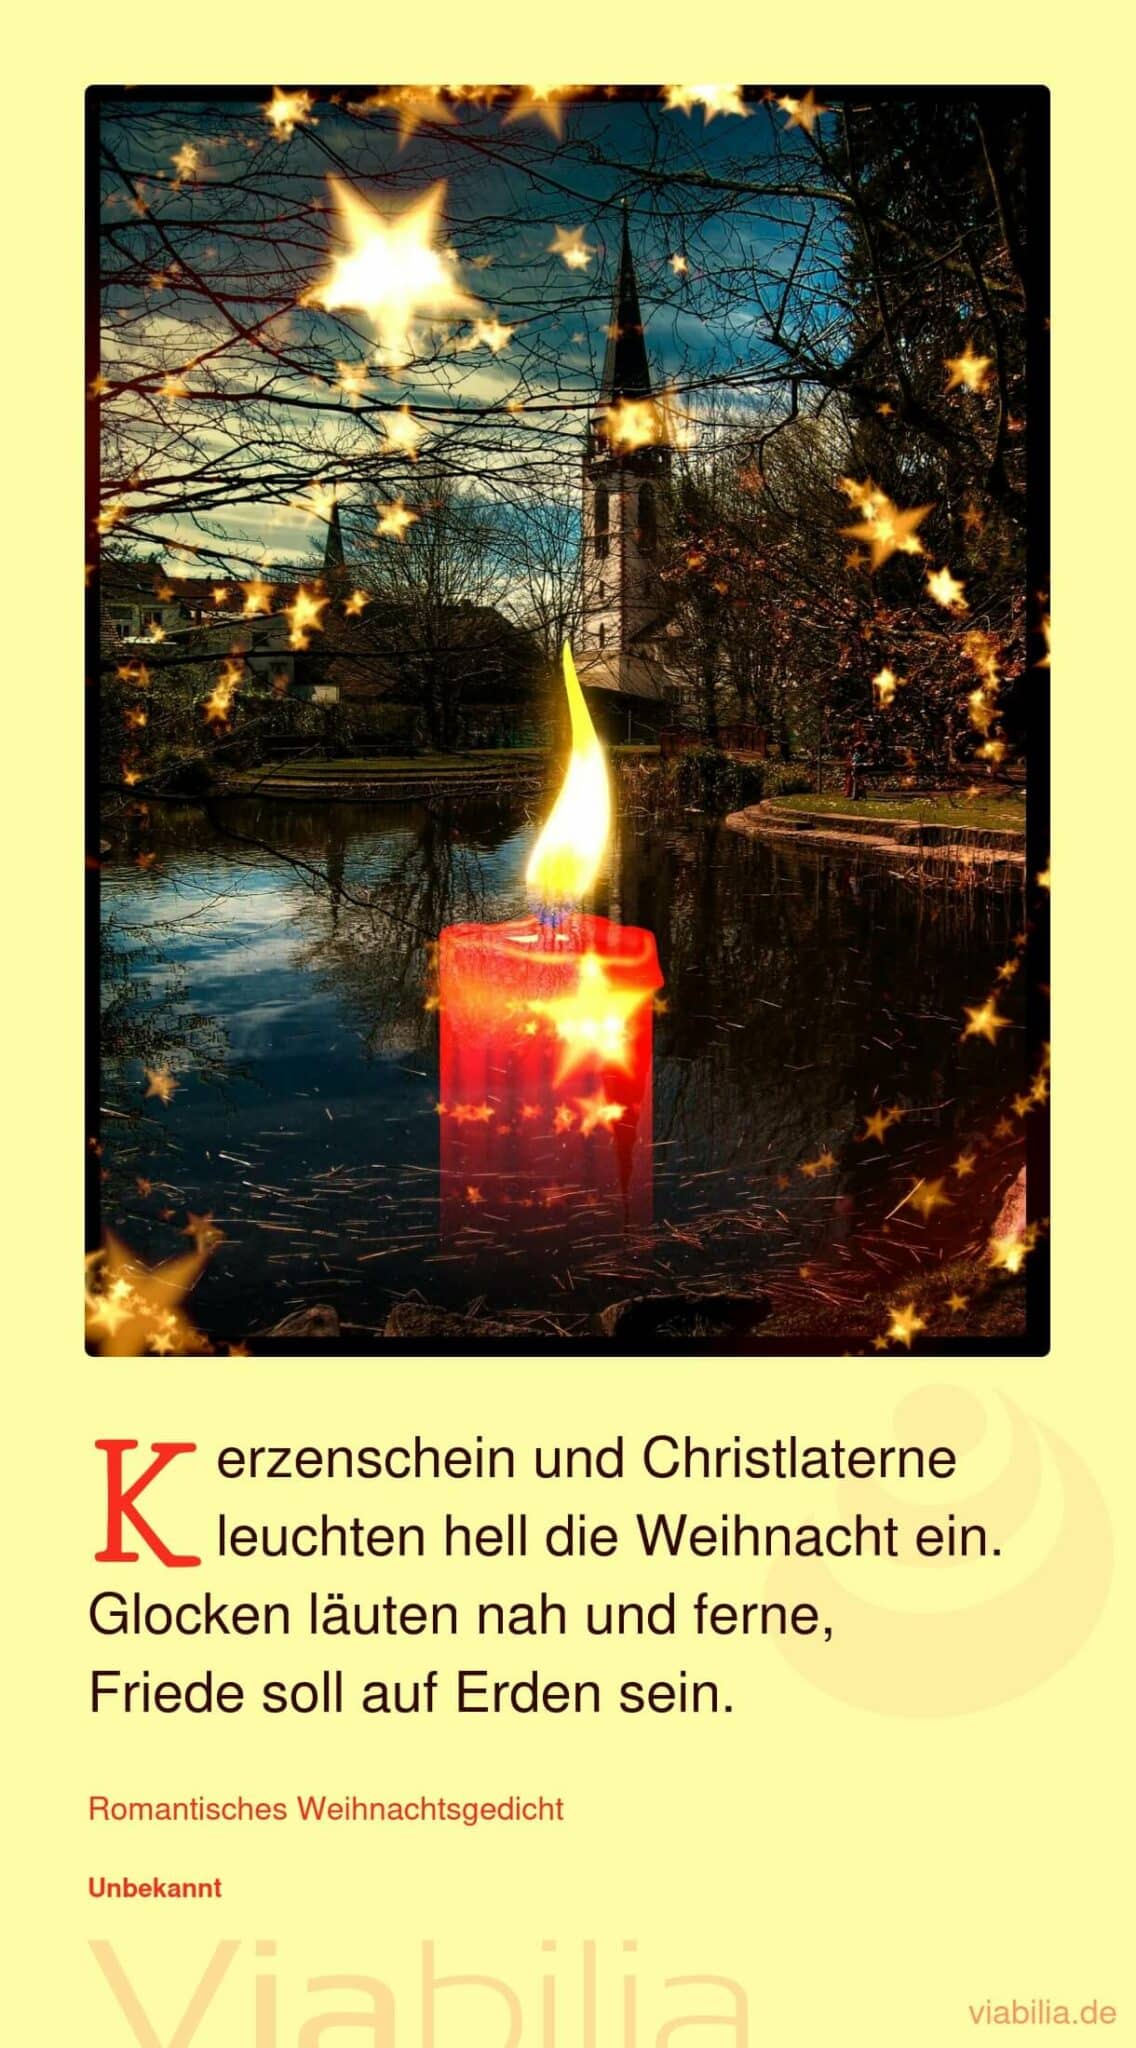 Romantisches Weihnachtsgedicht: Kerzenschein und Christlaterne